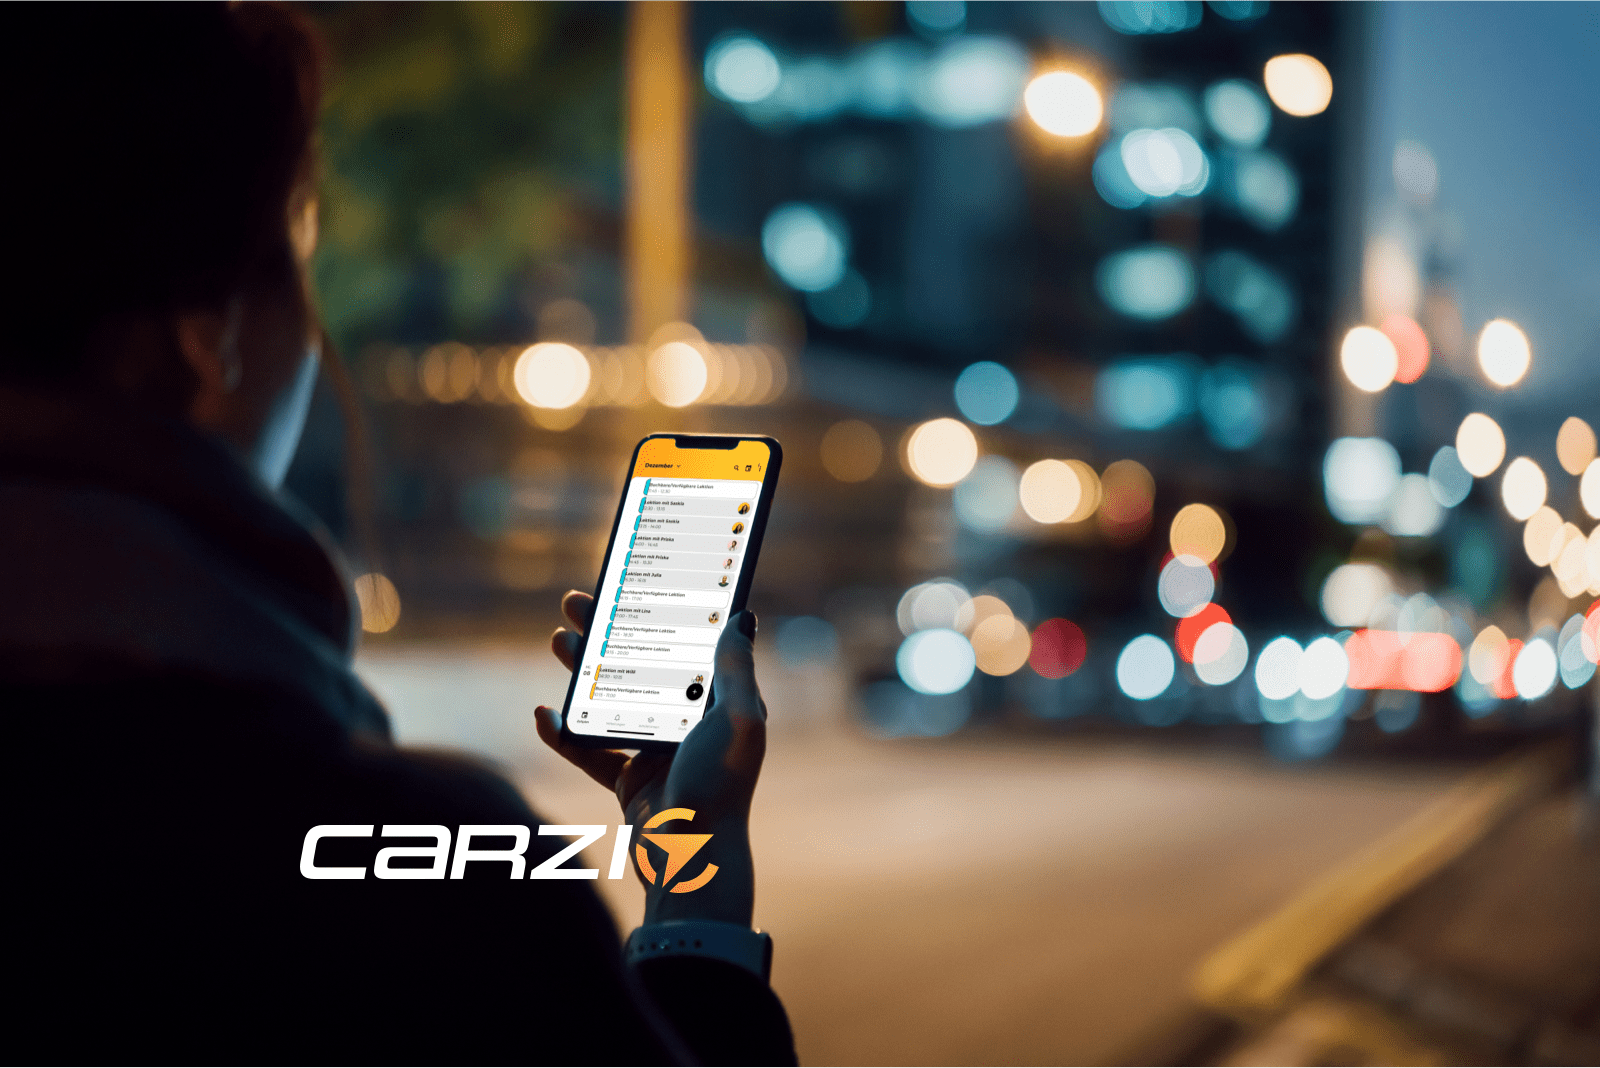 carzi App - Verbindet Fahrlehrer:innen und Fahrschüler:innenler